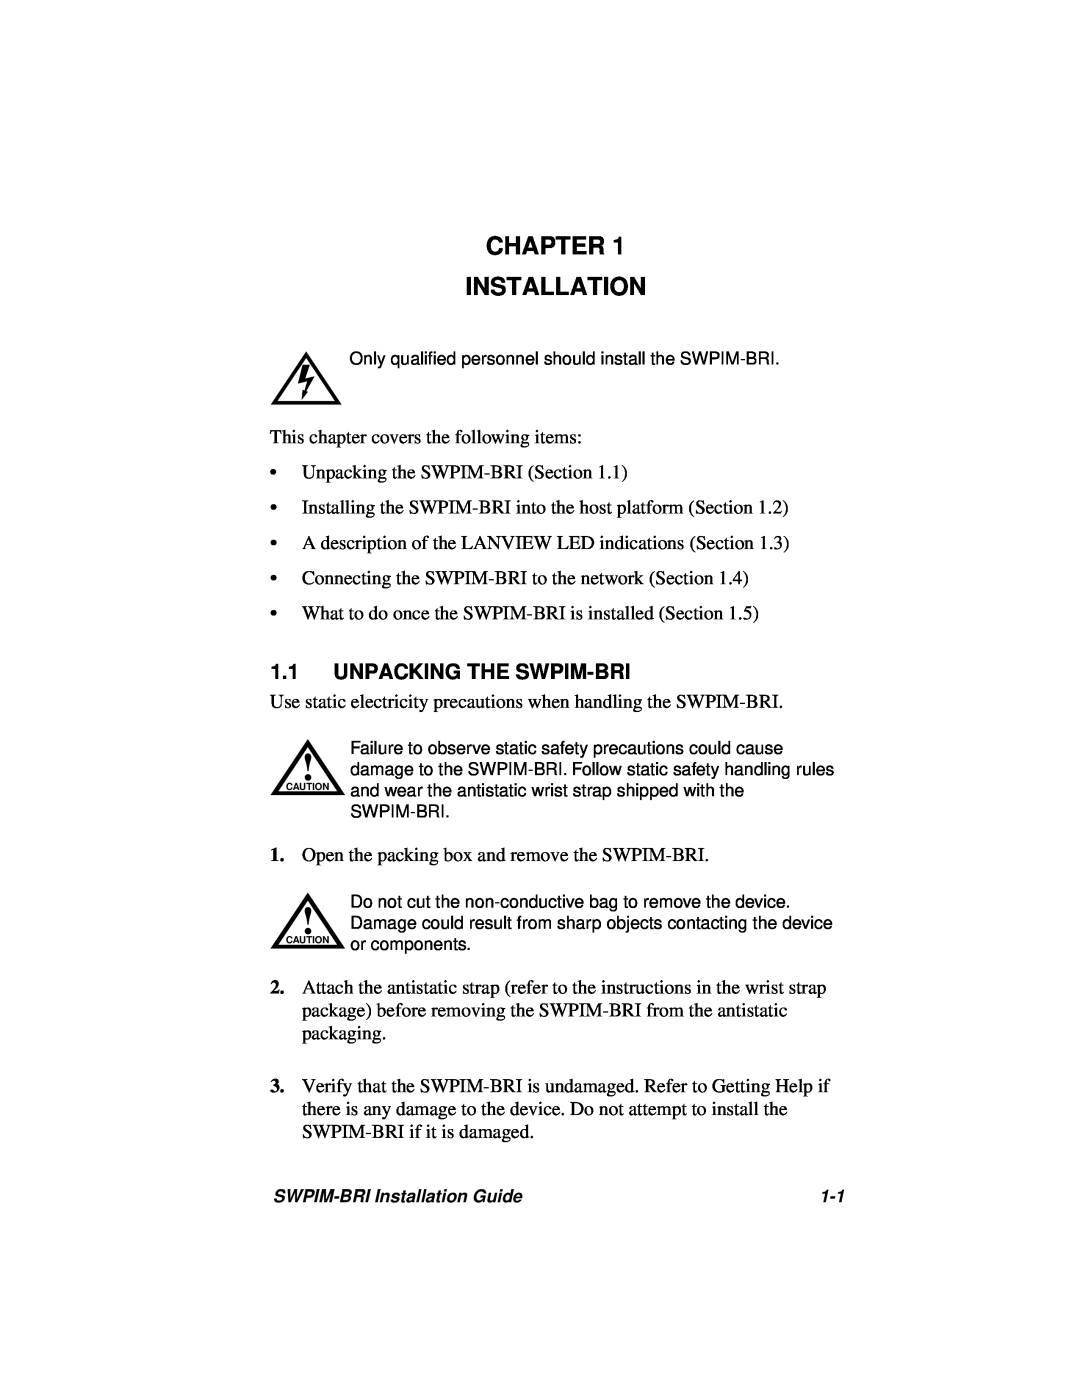 Cabletron Systems SWPIM-BRI manual Chapter Installation, Unpacking The Swpim-Bri 